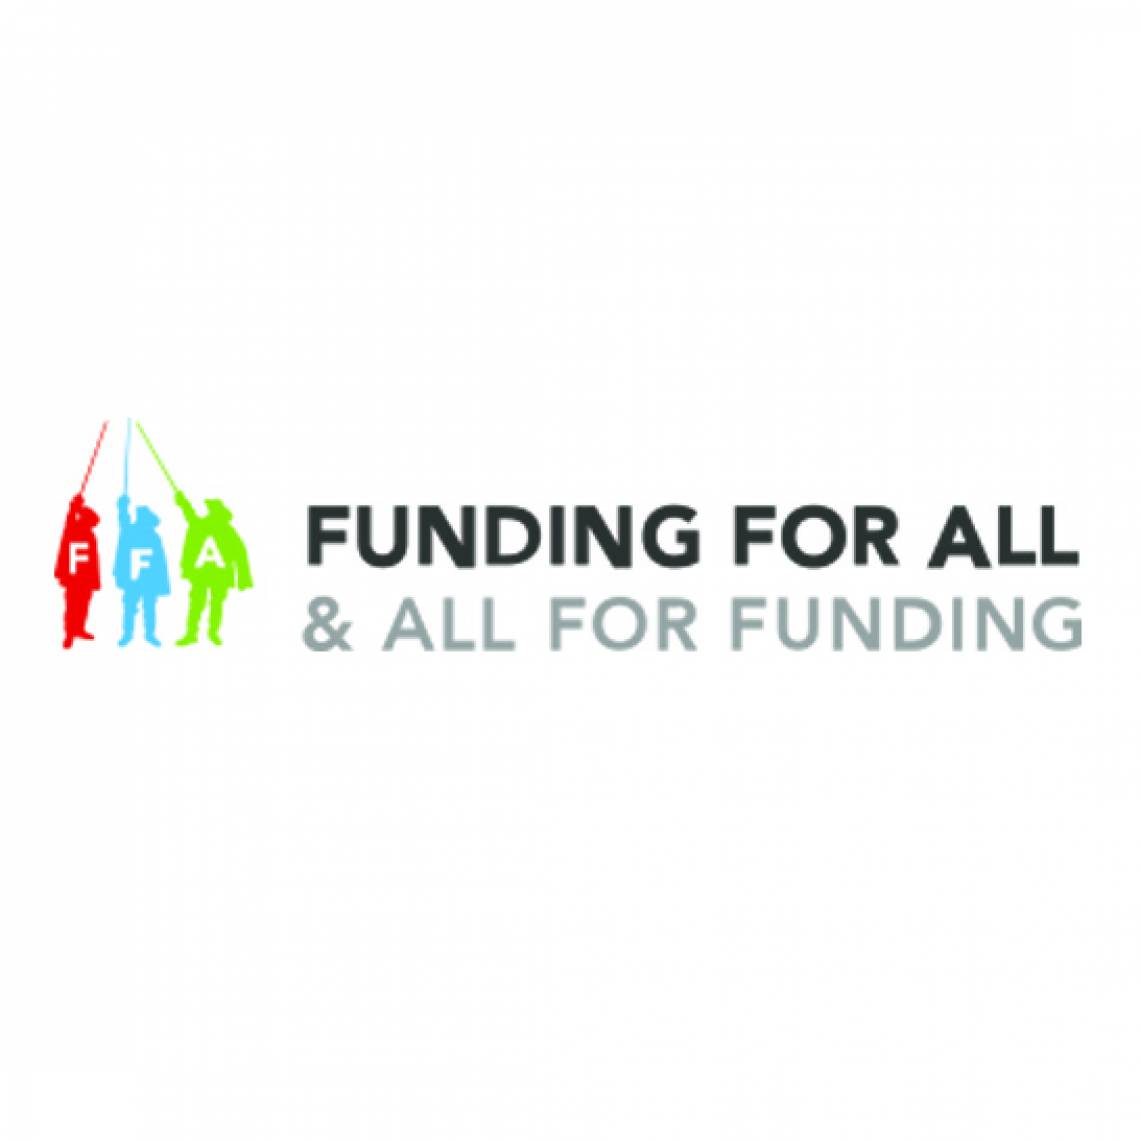 Funding for All logo